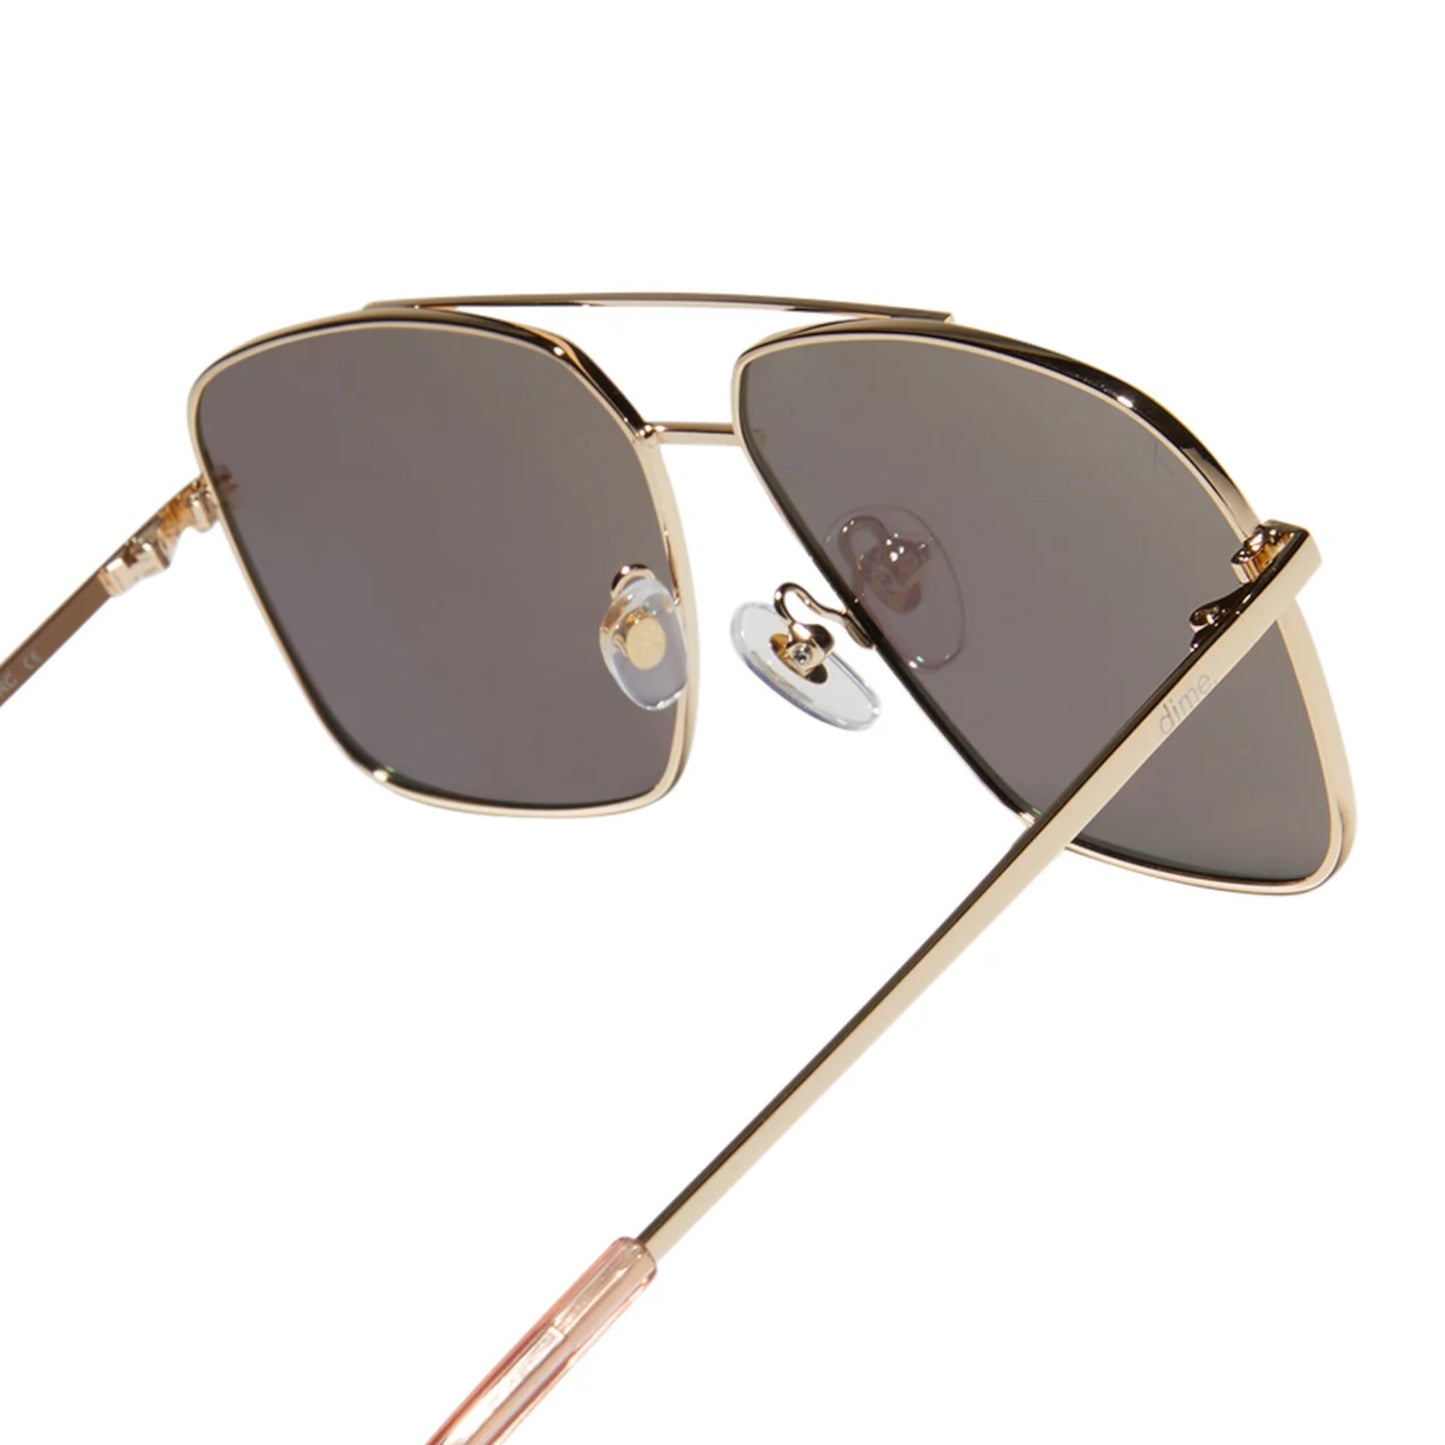 Encino Sunglasses: Gold + Turquoise Ice Polarized